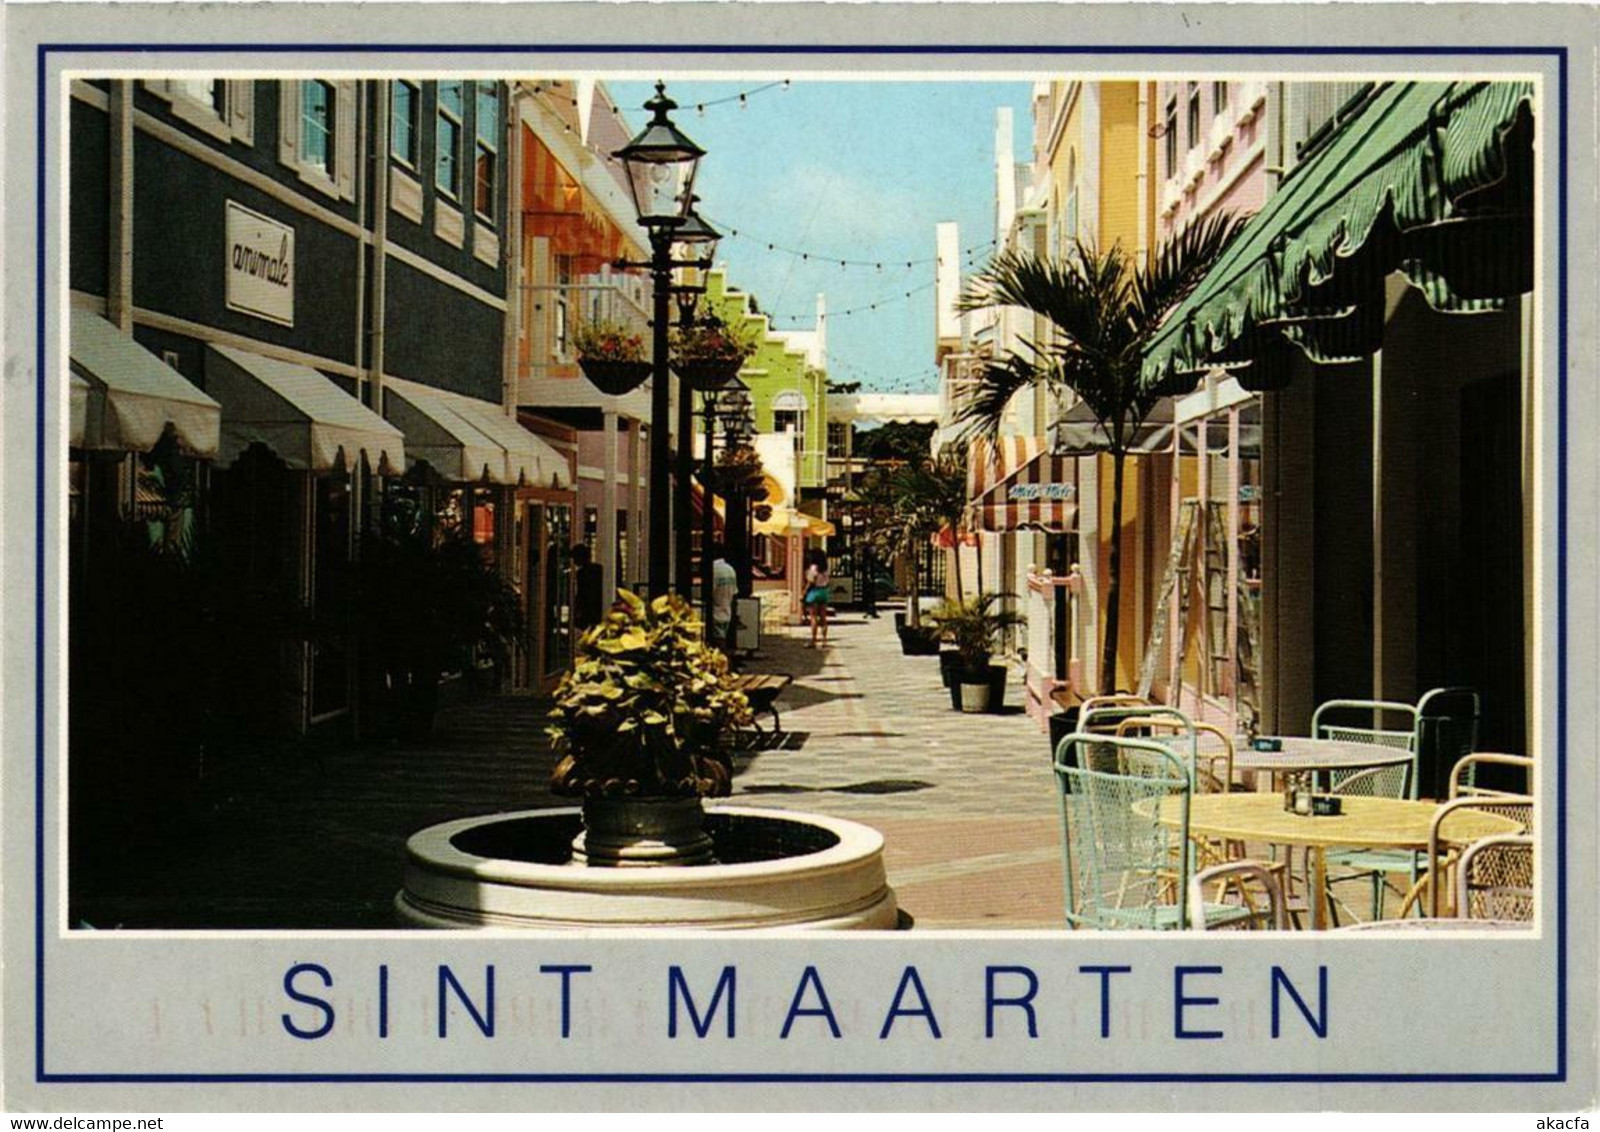 CPM AK Souvenir St-MARTIN (750196) - Saint-Martin